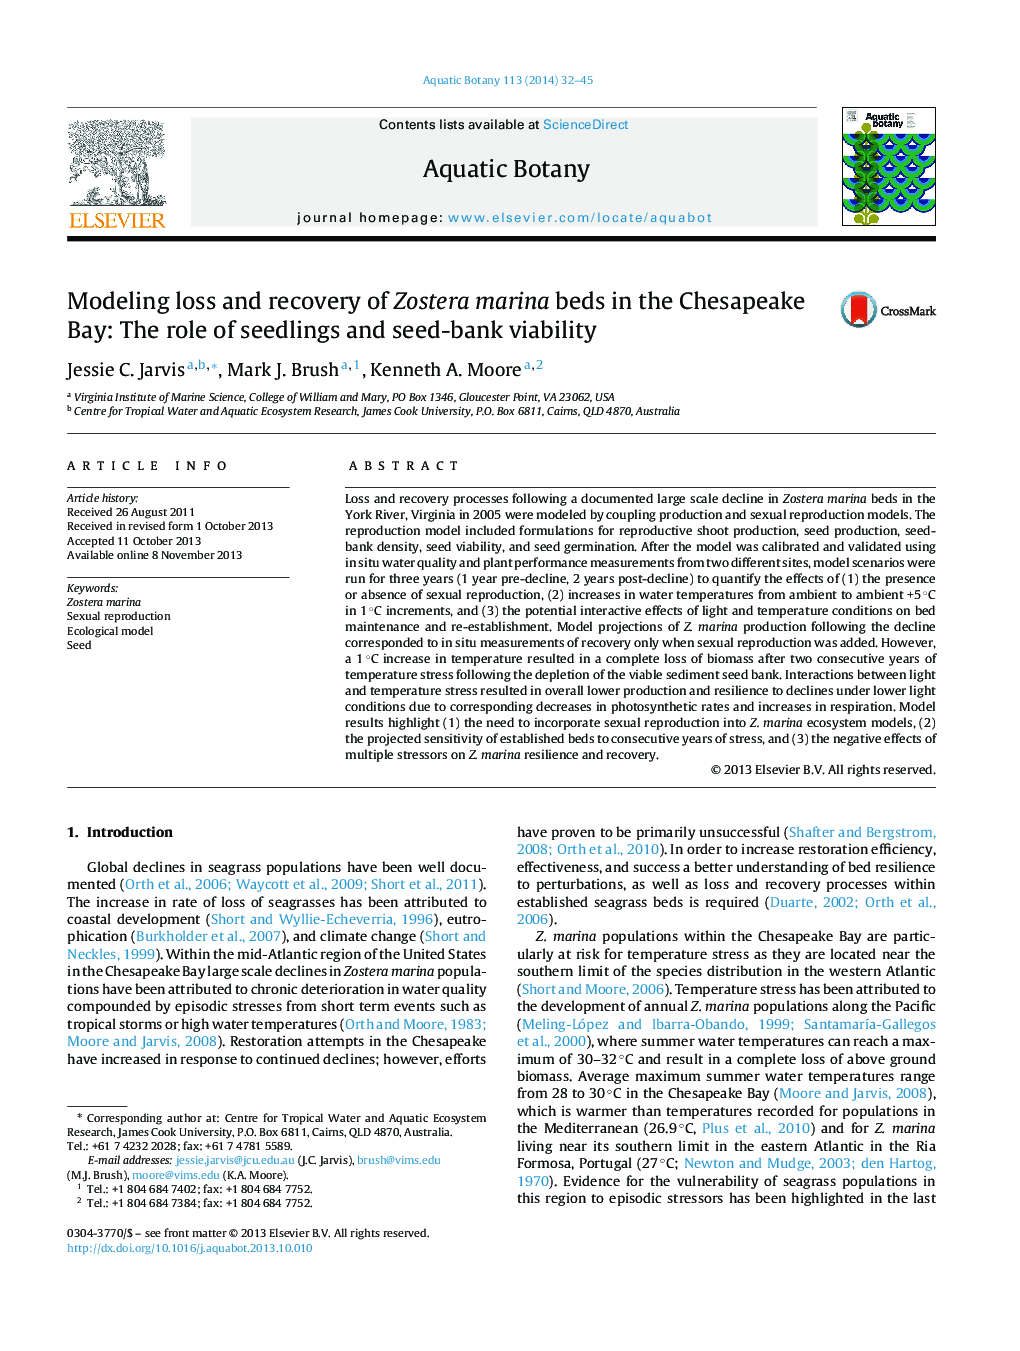 از دست دادن مدل سازی و بازیابی تختخواب زوستاا مارینا در خلیج چیسپیک: نقش نهال و قابلیت زنده ماندن بذر 